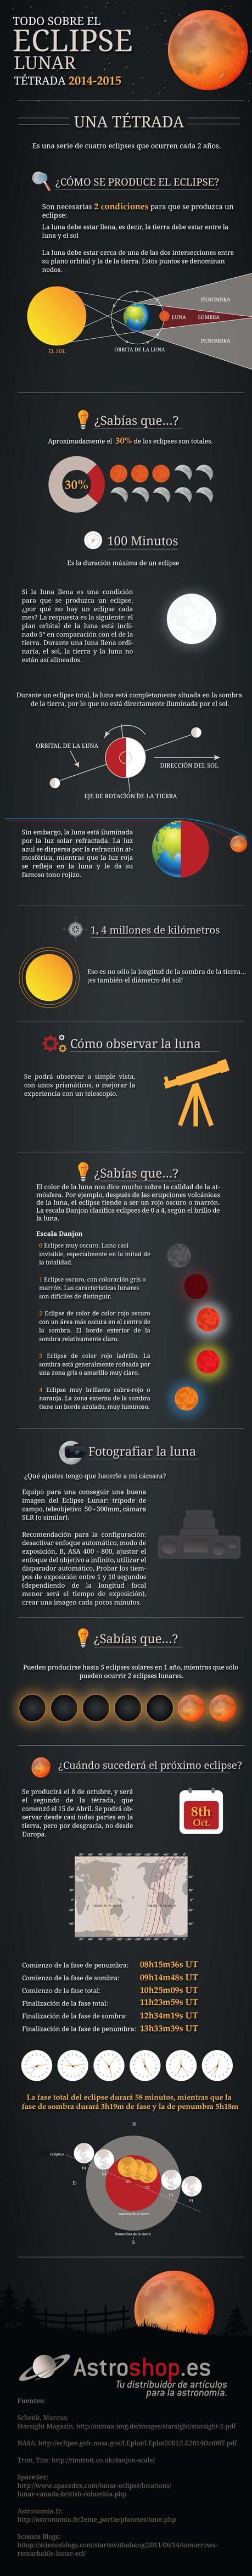 Infographic: understanding lunar eclipses